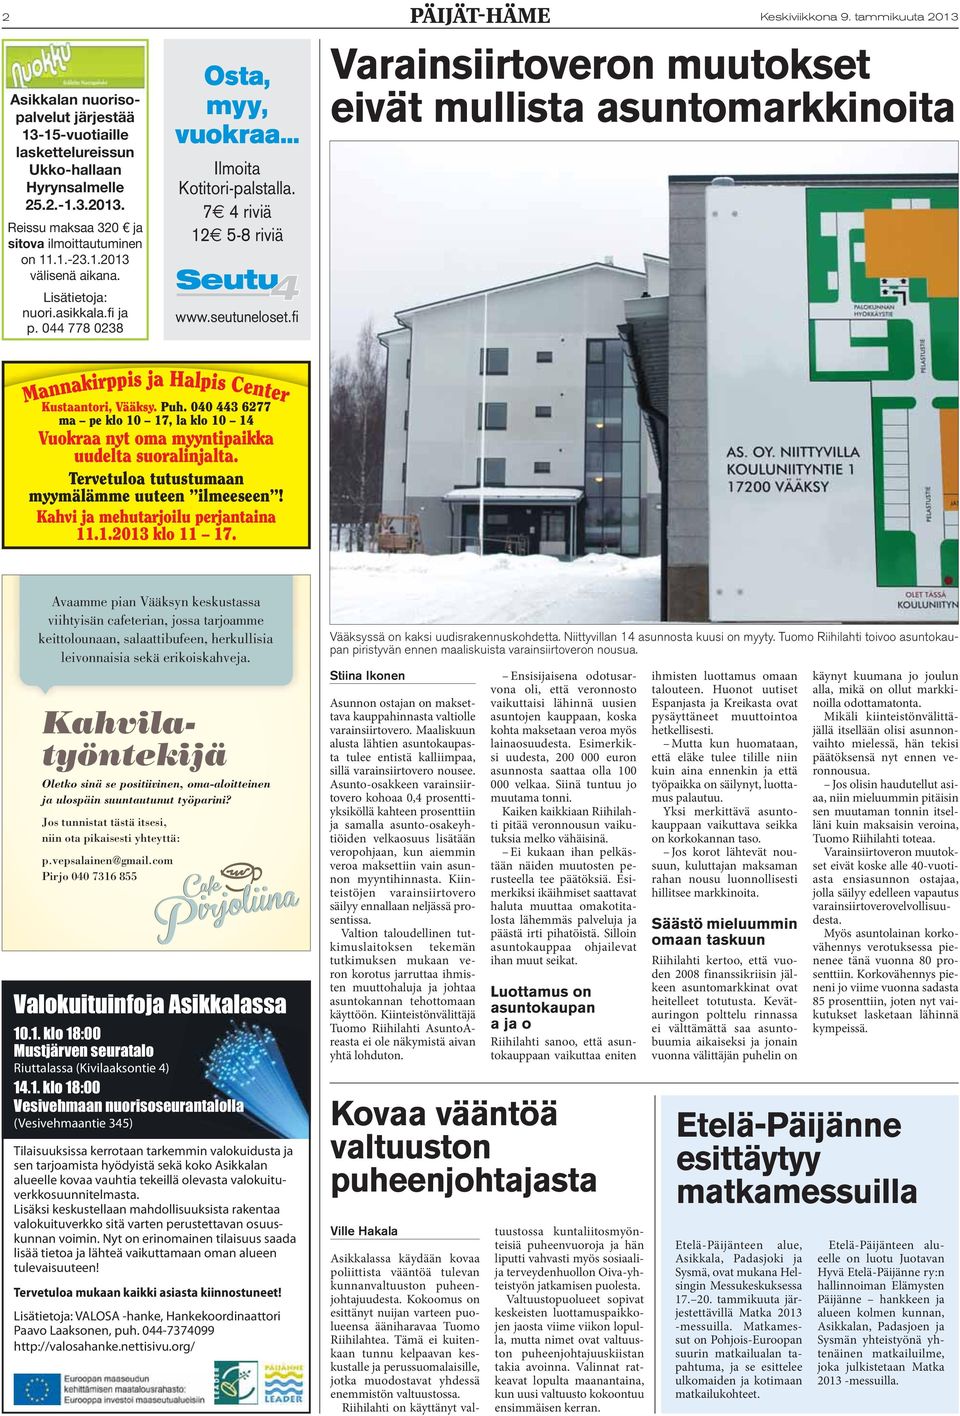 tammikuuta 2013 Varainsiirtoveron muutokset eivät mullista asuntomarkkinoita Mannakirppis ja Halpis Center Kustaantori, Vääksy. Puh.